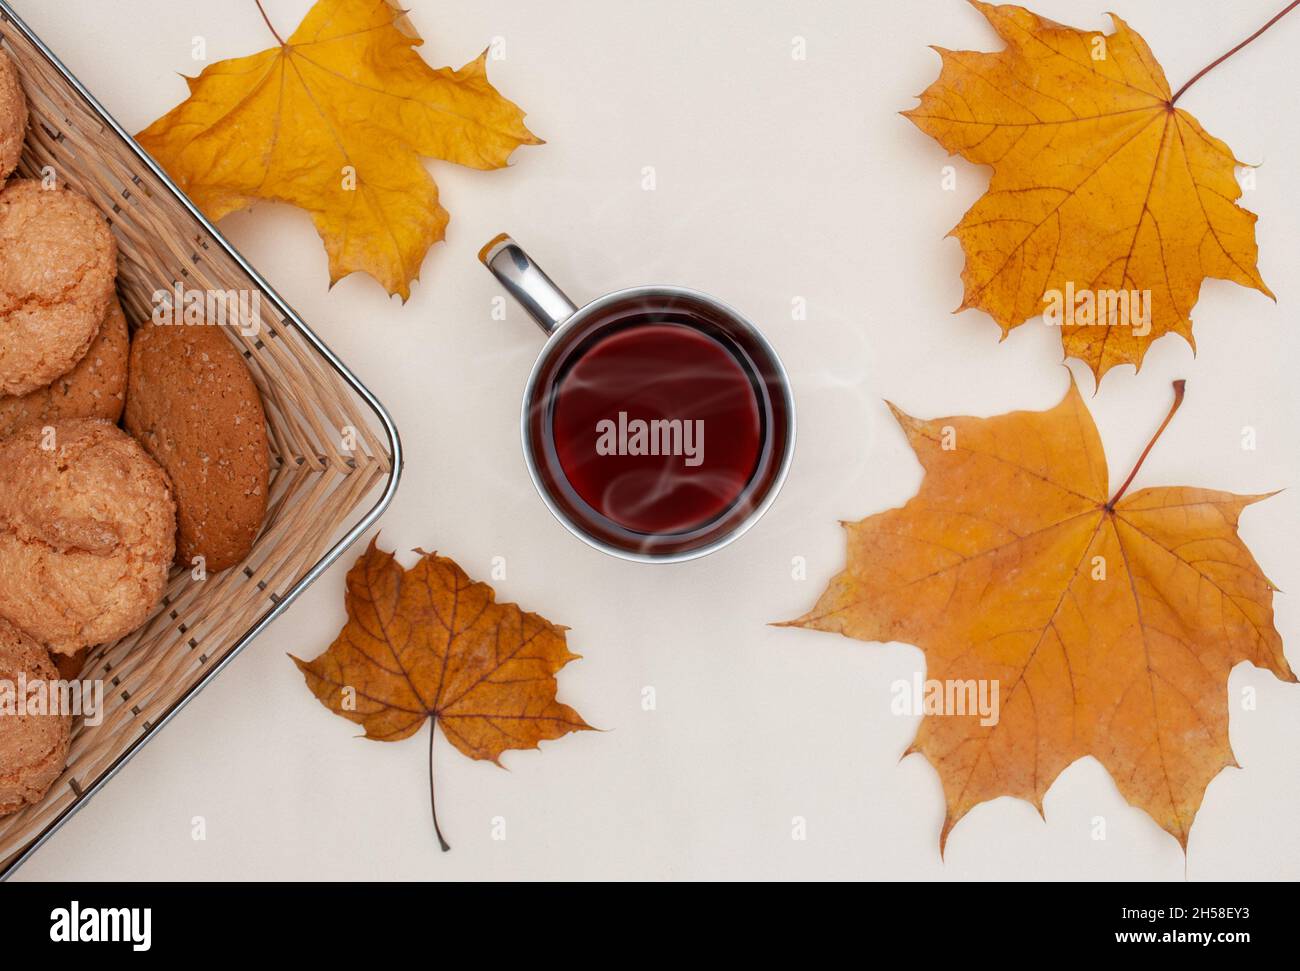 piatto di foglie di acero giallo autunno, tazza con tè caldo, cestino con biscotti su sfondo avorio Foto Stock